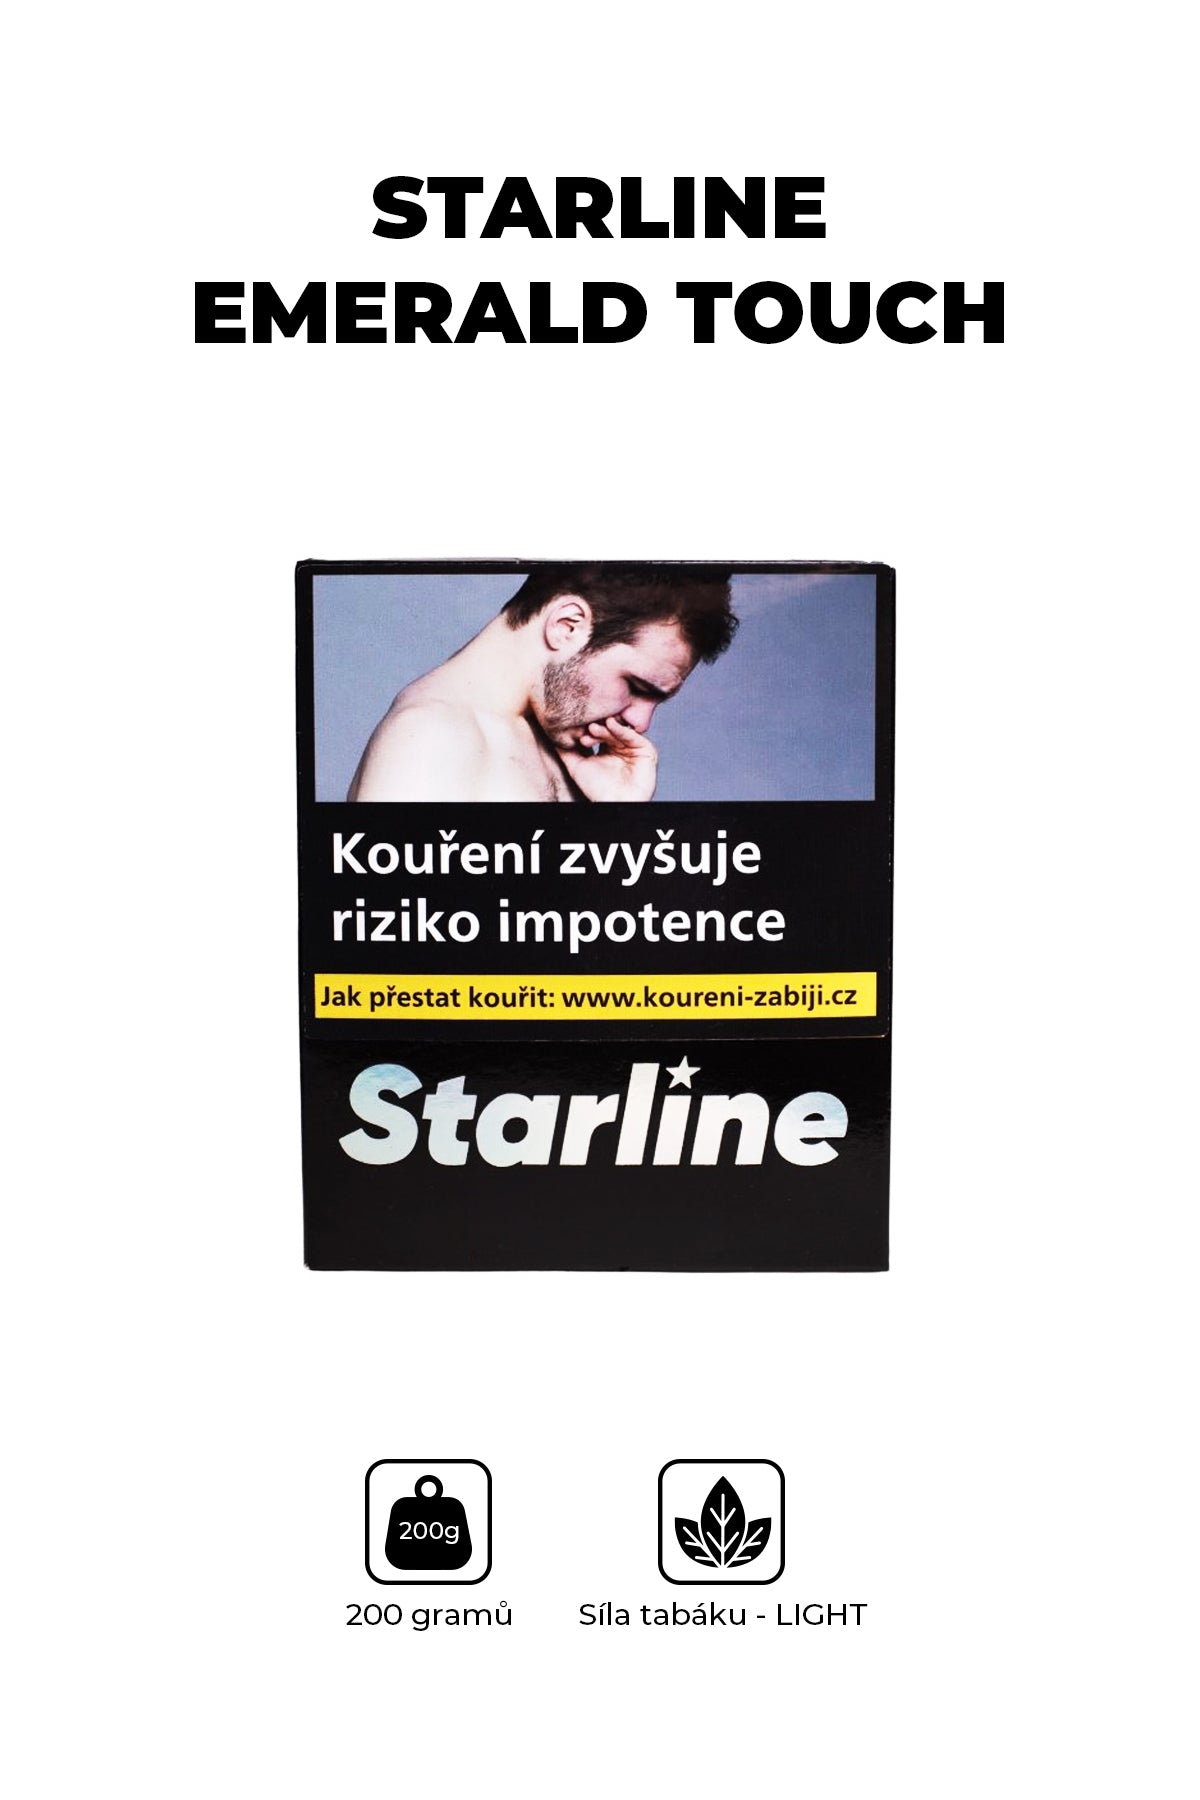 Tabák - Starline 200g - Emerald Touch